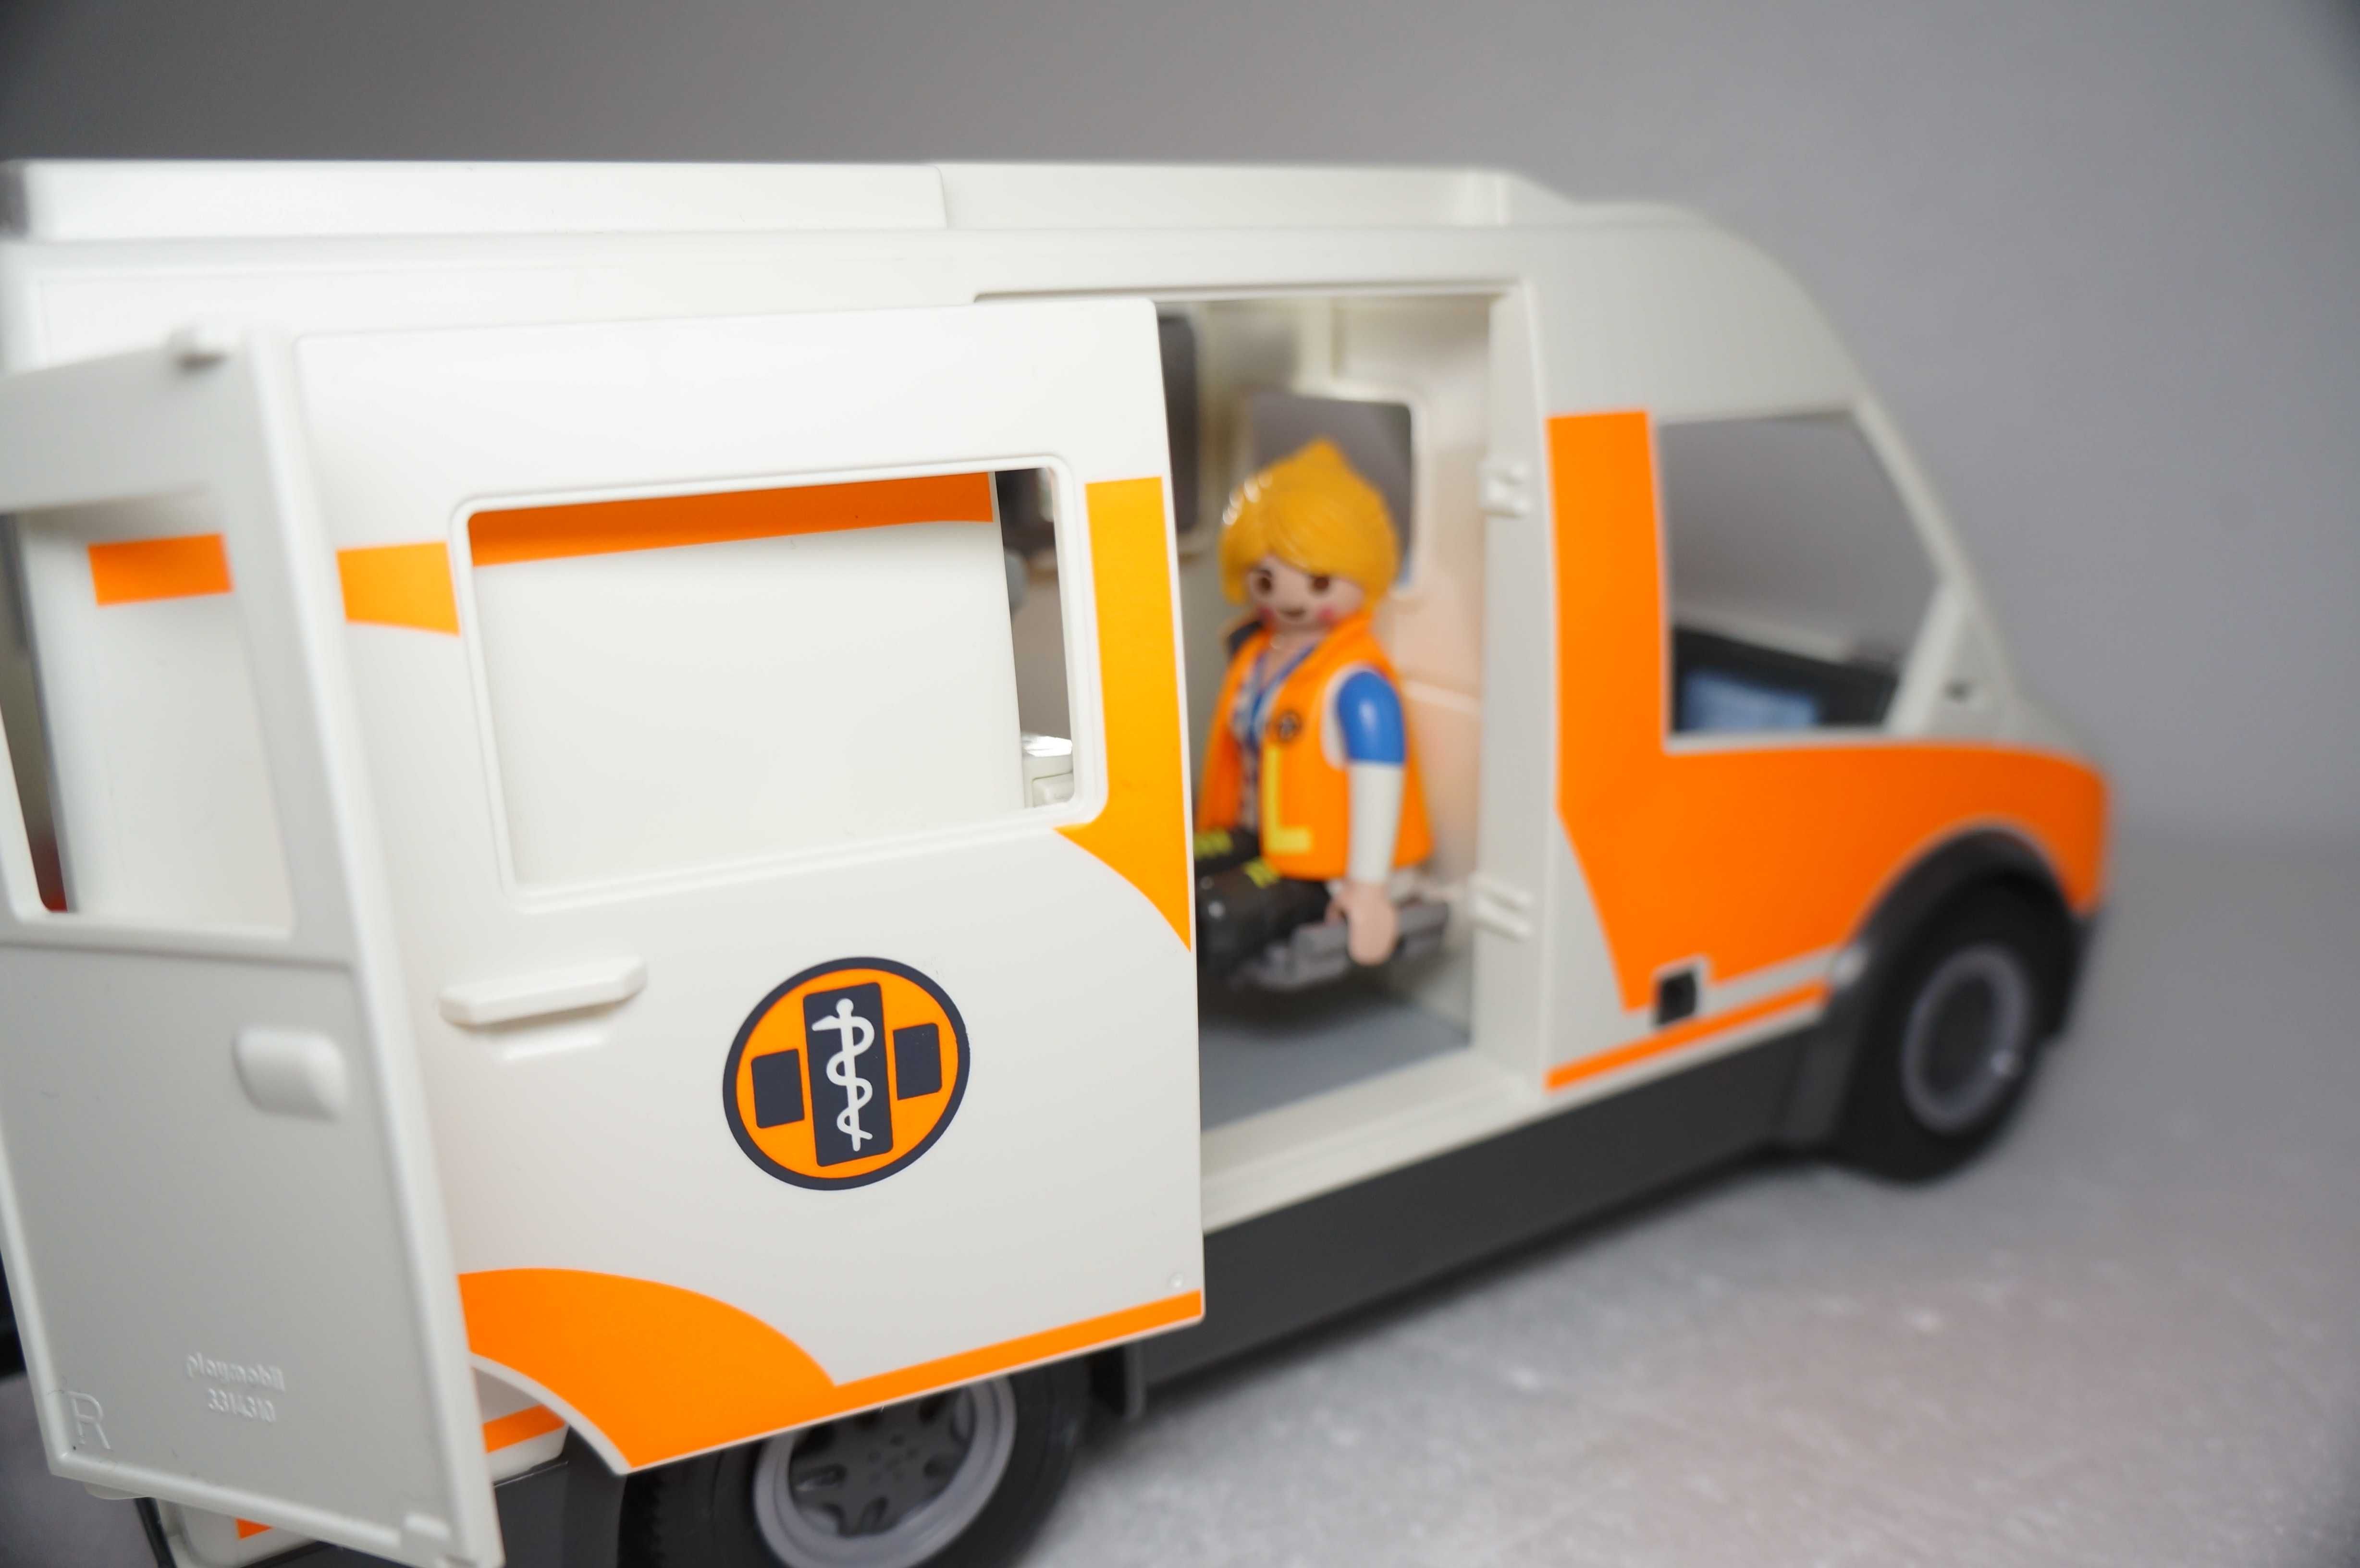 Playmobile 773 Karetka ambulans nowy model światło i dźwięk  Playmobil